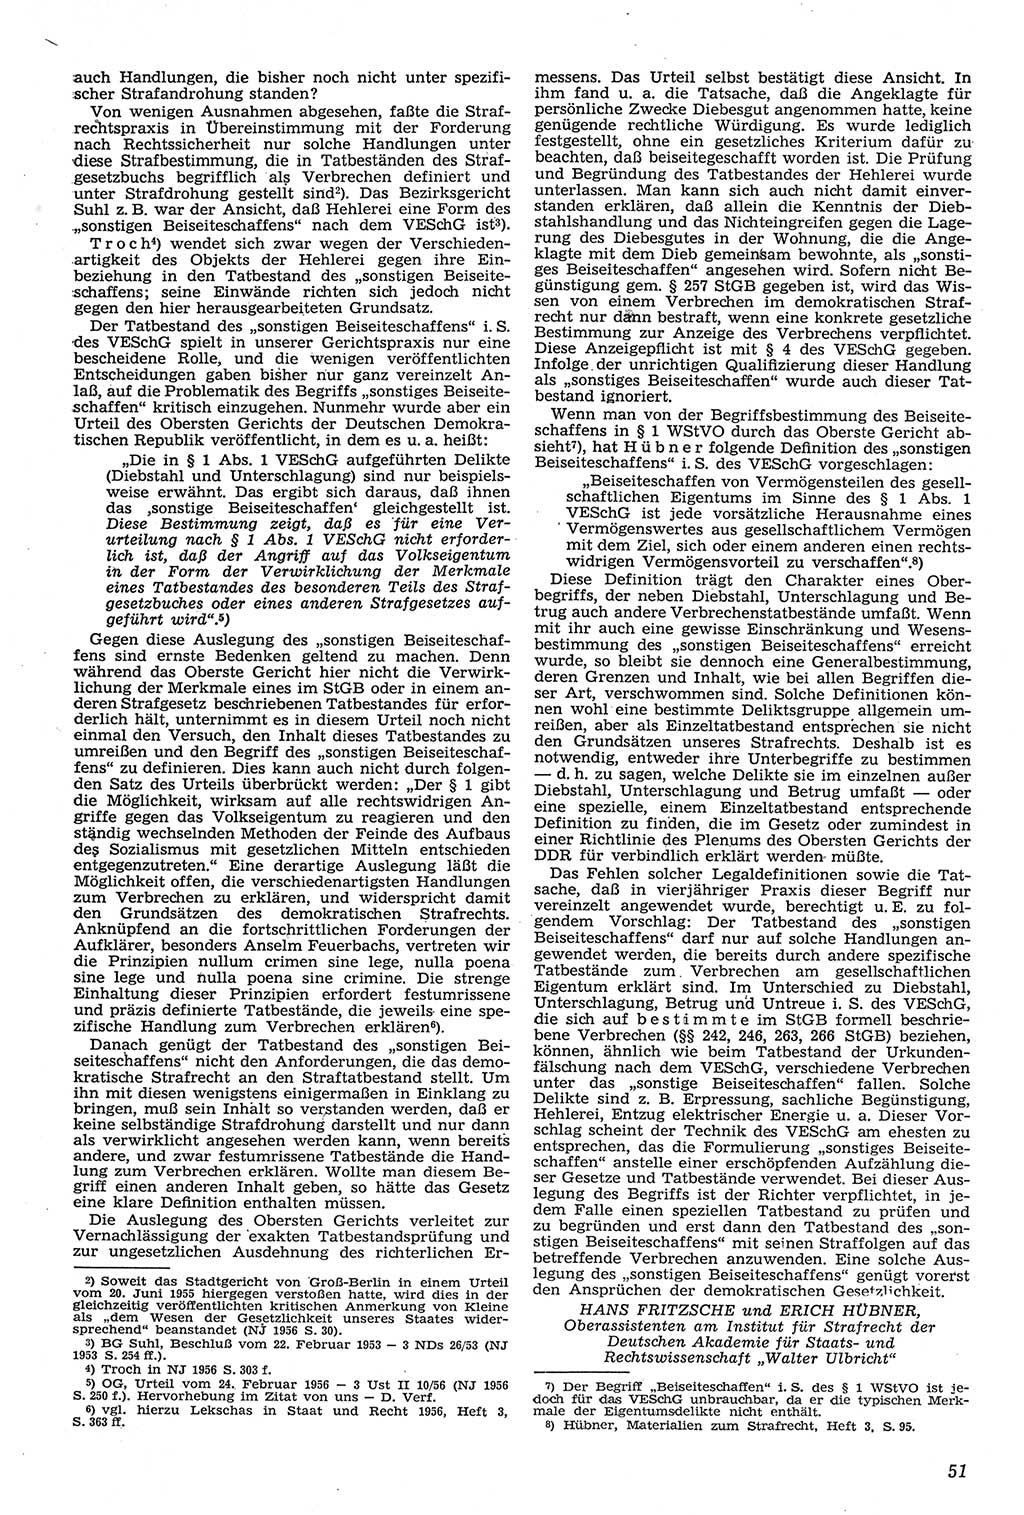 Neue Justiz (NJ), Zeitschrift für Recht und Rechtswissenschaft [Deutsche Demokratische Republik (DDR)], 11. Jahrgang 1957, Seite 51 (NJ DDR 1957, S. 51)